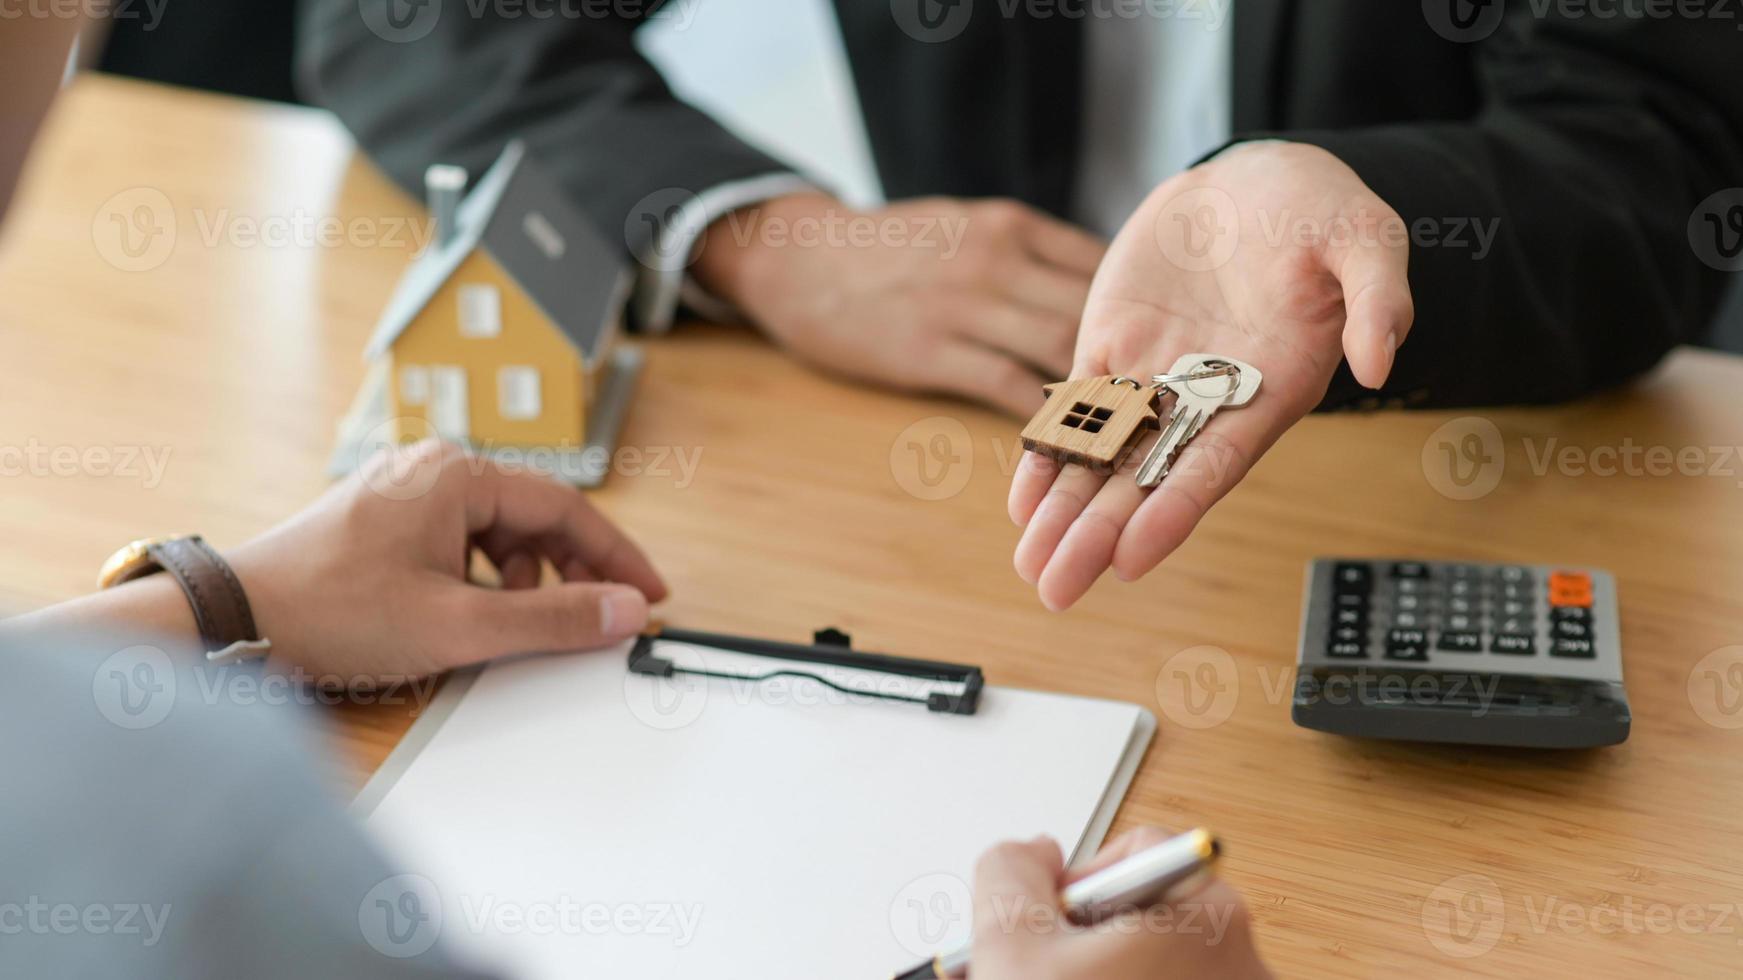 bijgesneden opname van het ondertekenen van een koopcontract voor een huis terwijl de makelaar de huissleutel vasthoudt. foto